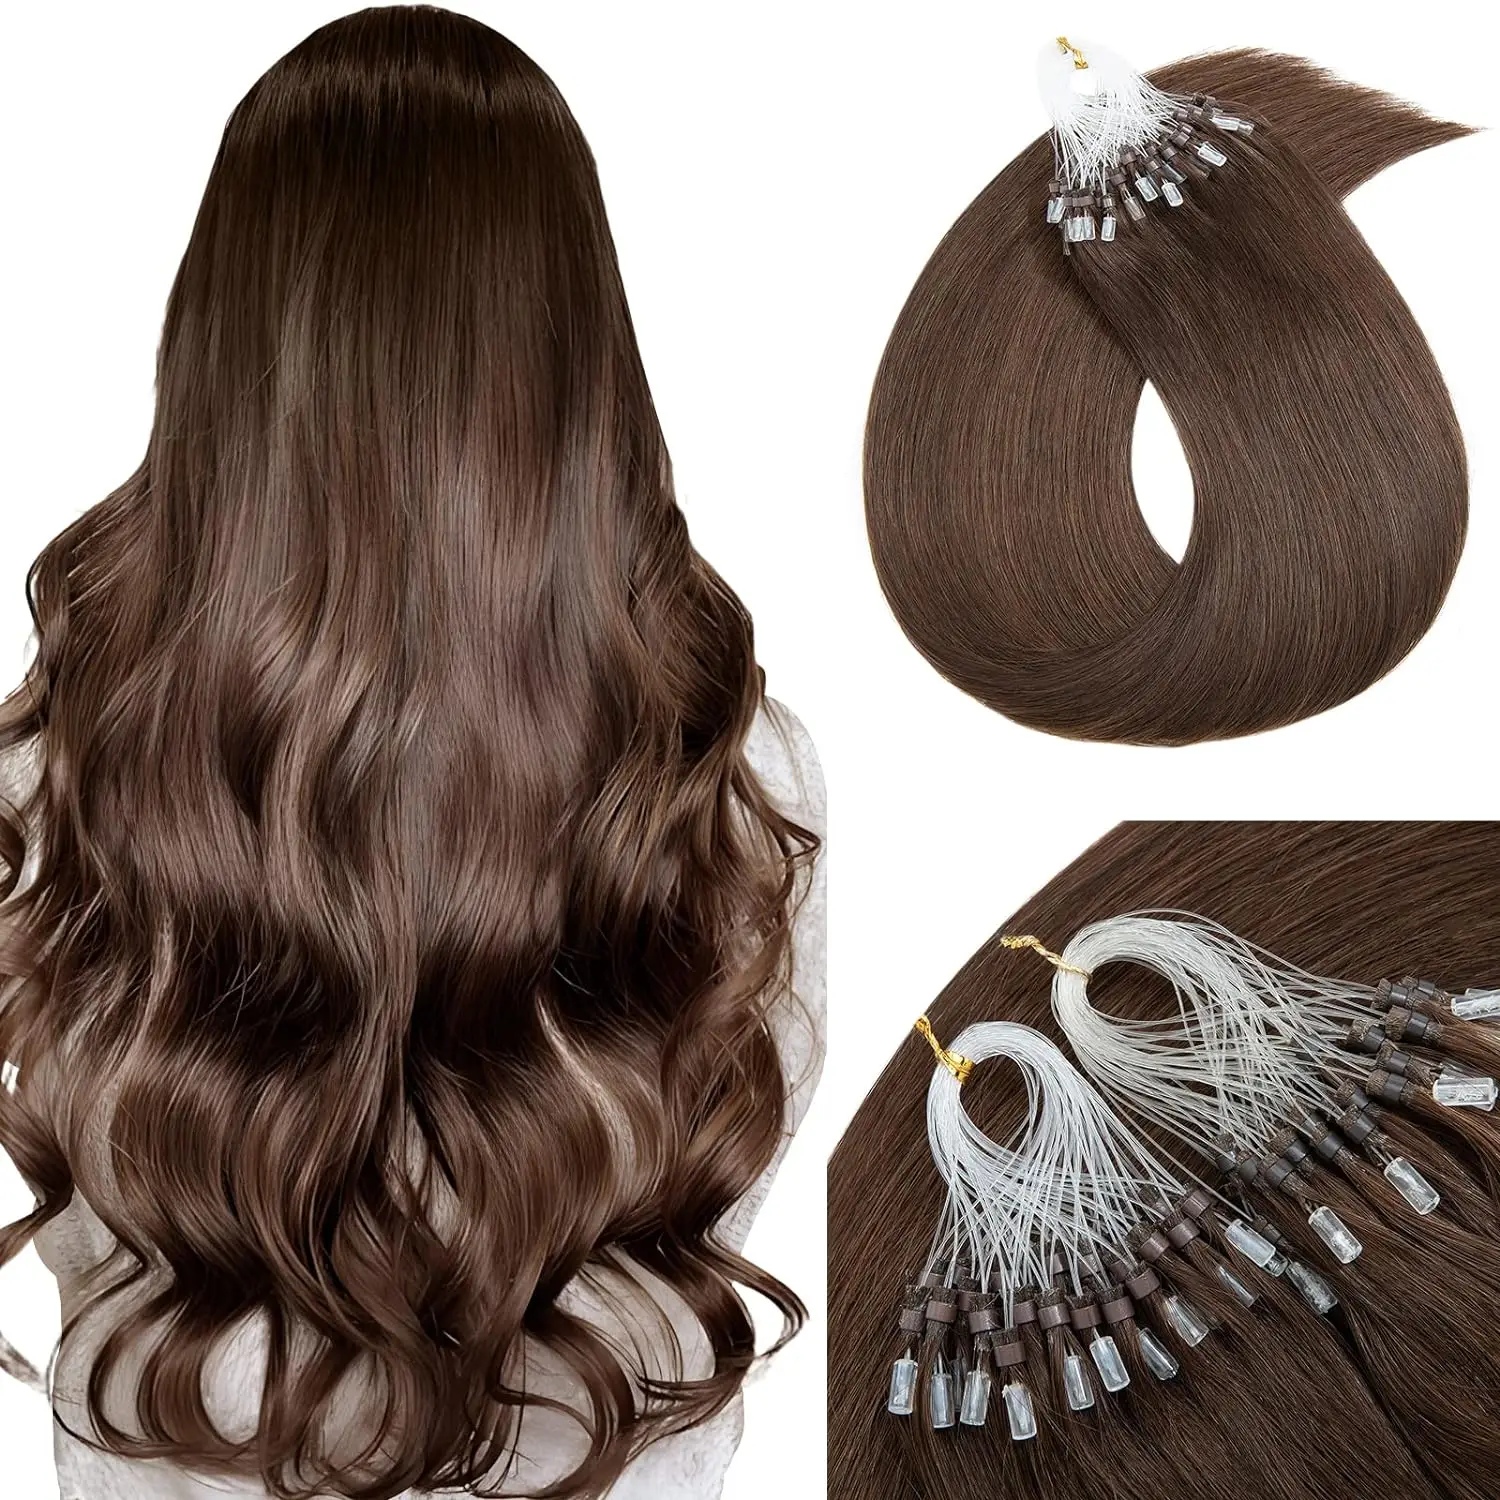 

Коричневые Micro Link волосы для наращивания, настоящие человеческие волосы, Micro Ring, наращивание волос #4, темно-коричневые микро-петли для наращивания, человеческие волосы